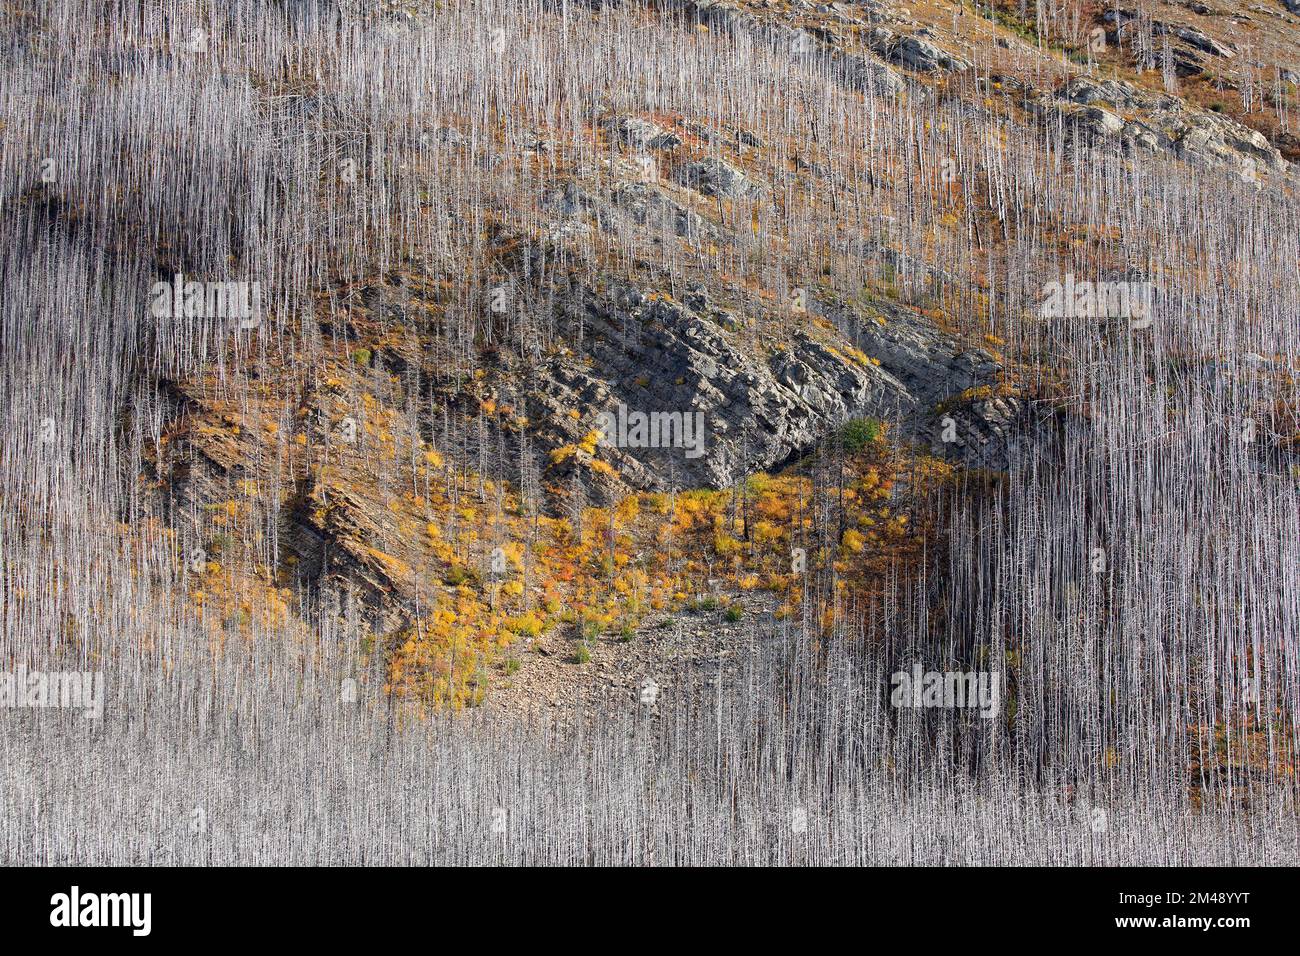 La couleur de l'automne dans la végétation repoussent sur l'affleurement rocheux entouré d'arbres morts 5 ans après que la forêt a été brûlée dans un feu de forêt, Waterton Park, Canada. Banque D'Images